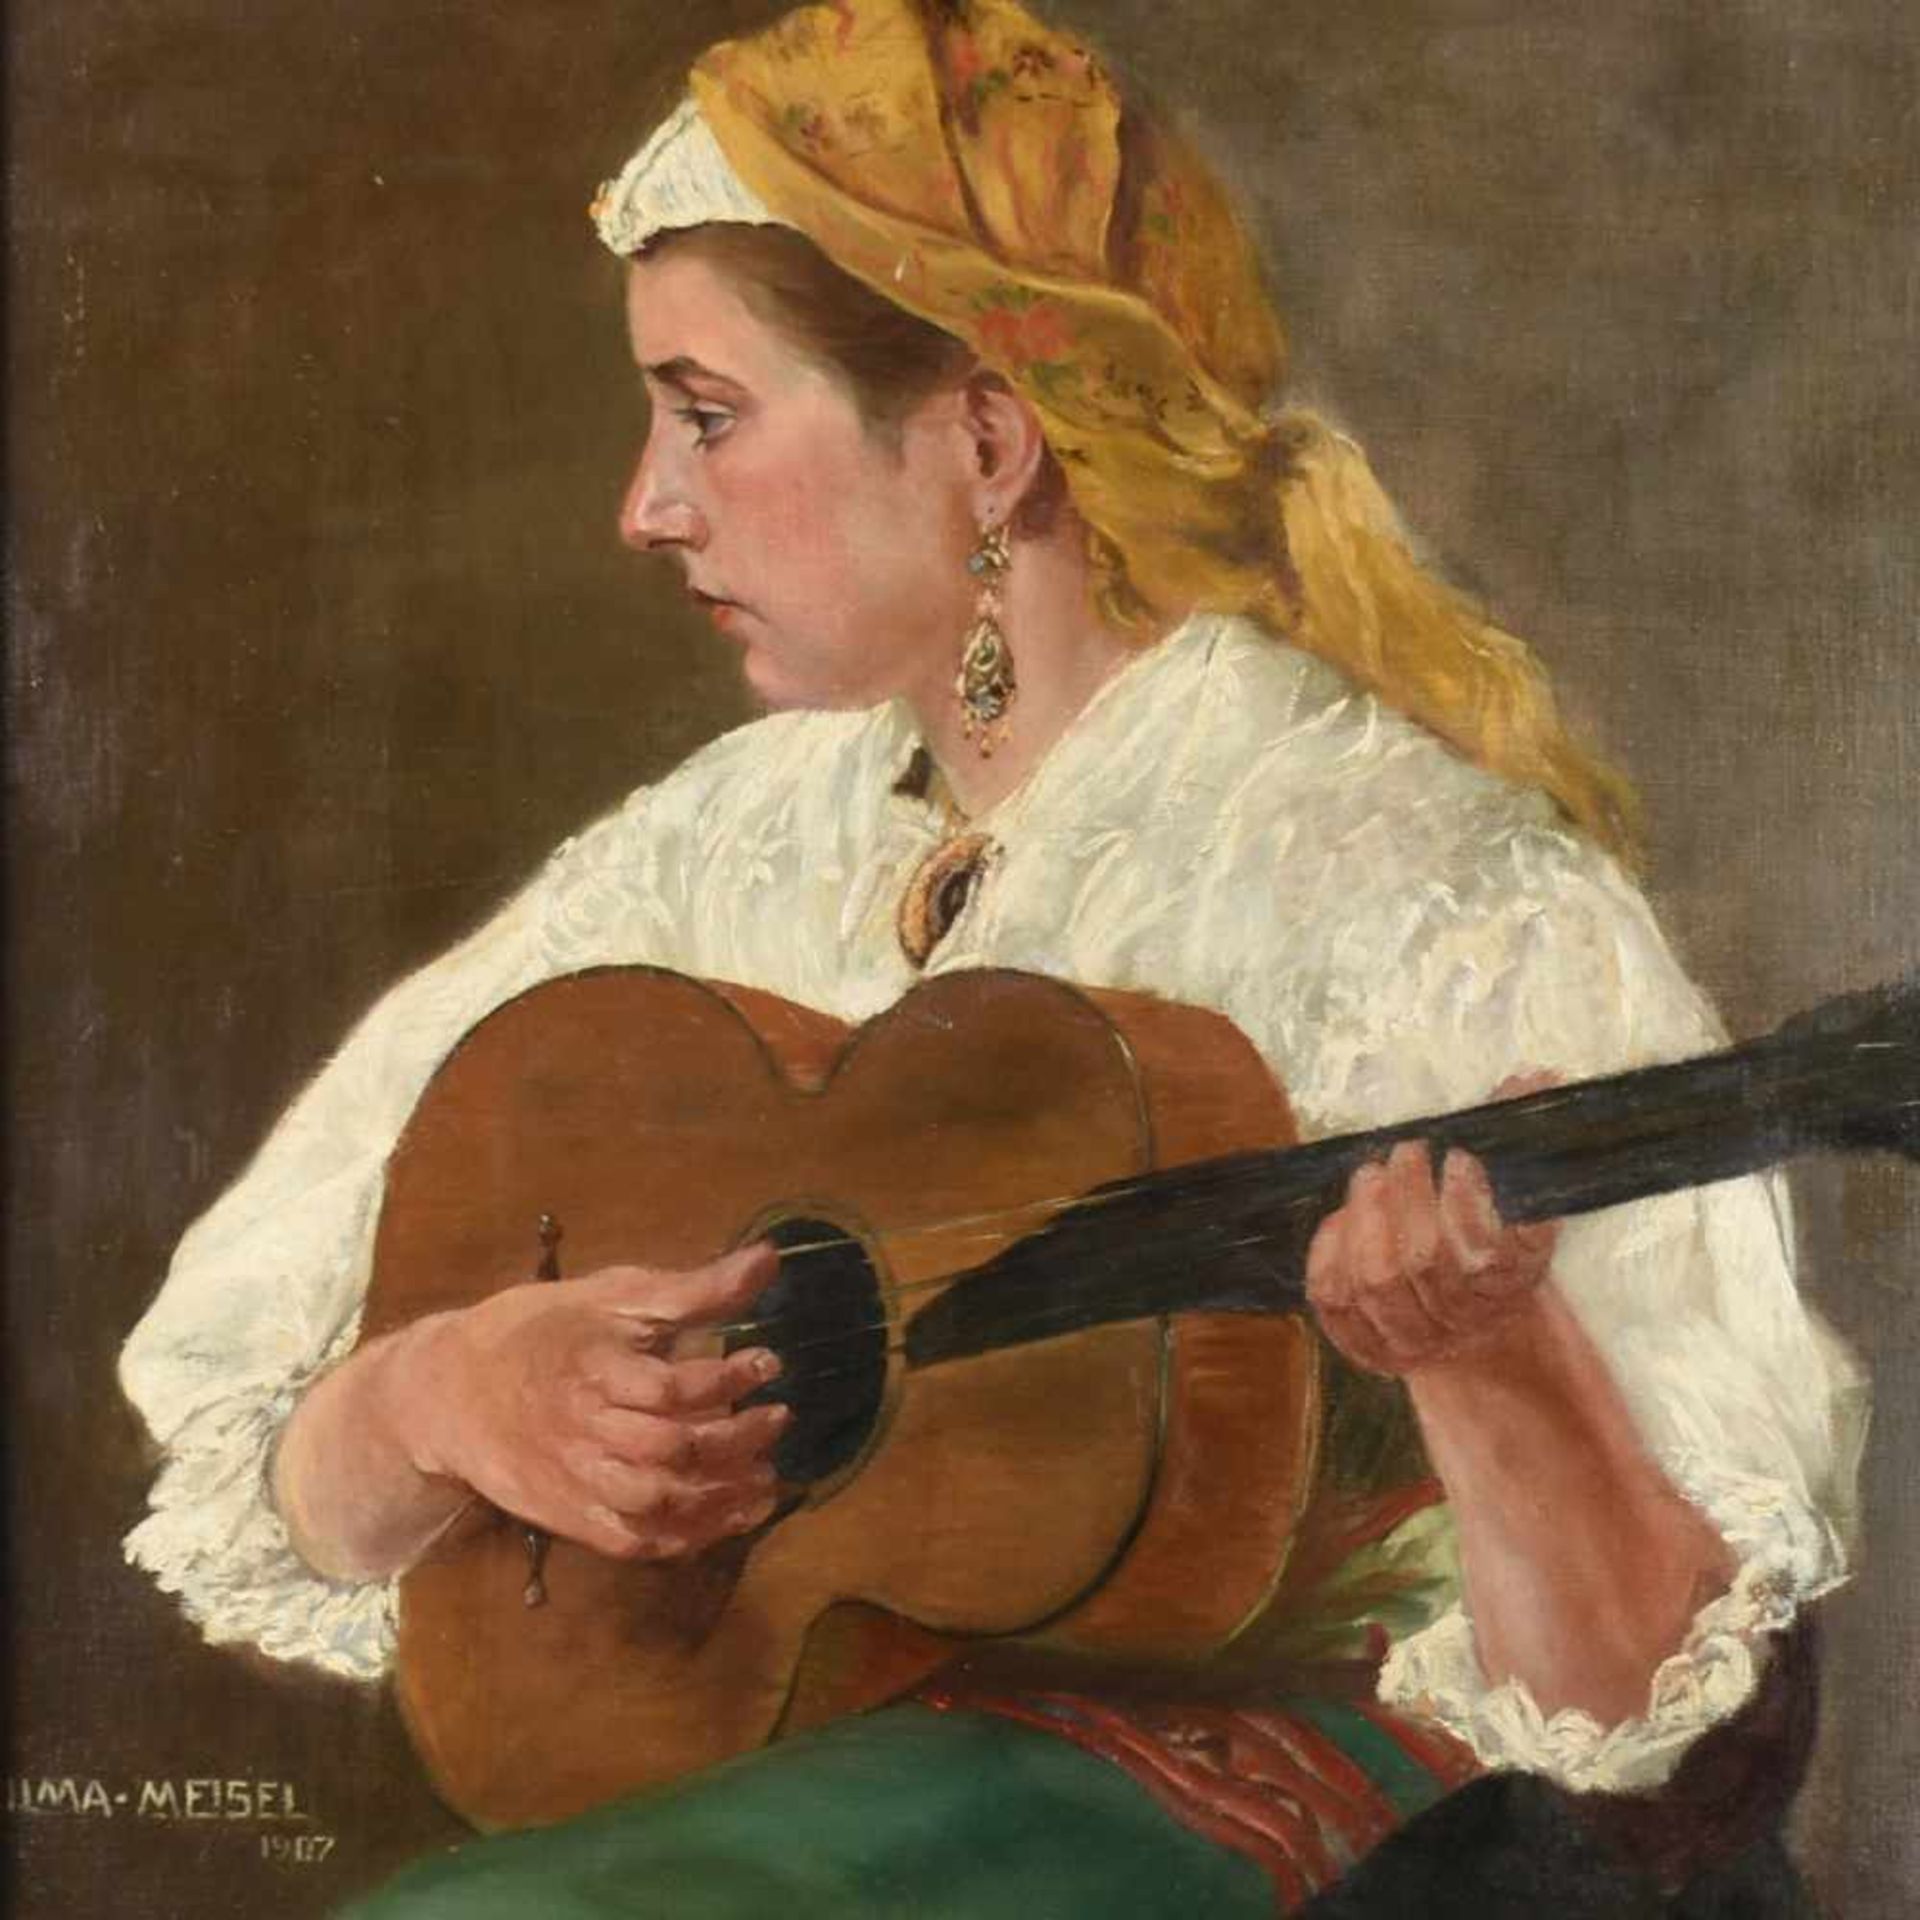 Meisel, Vilma Öl/Lwd. auf Karton, Mandolinenspielerin, links unten signiert und datiert 1907,